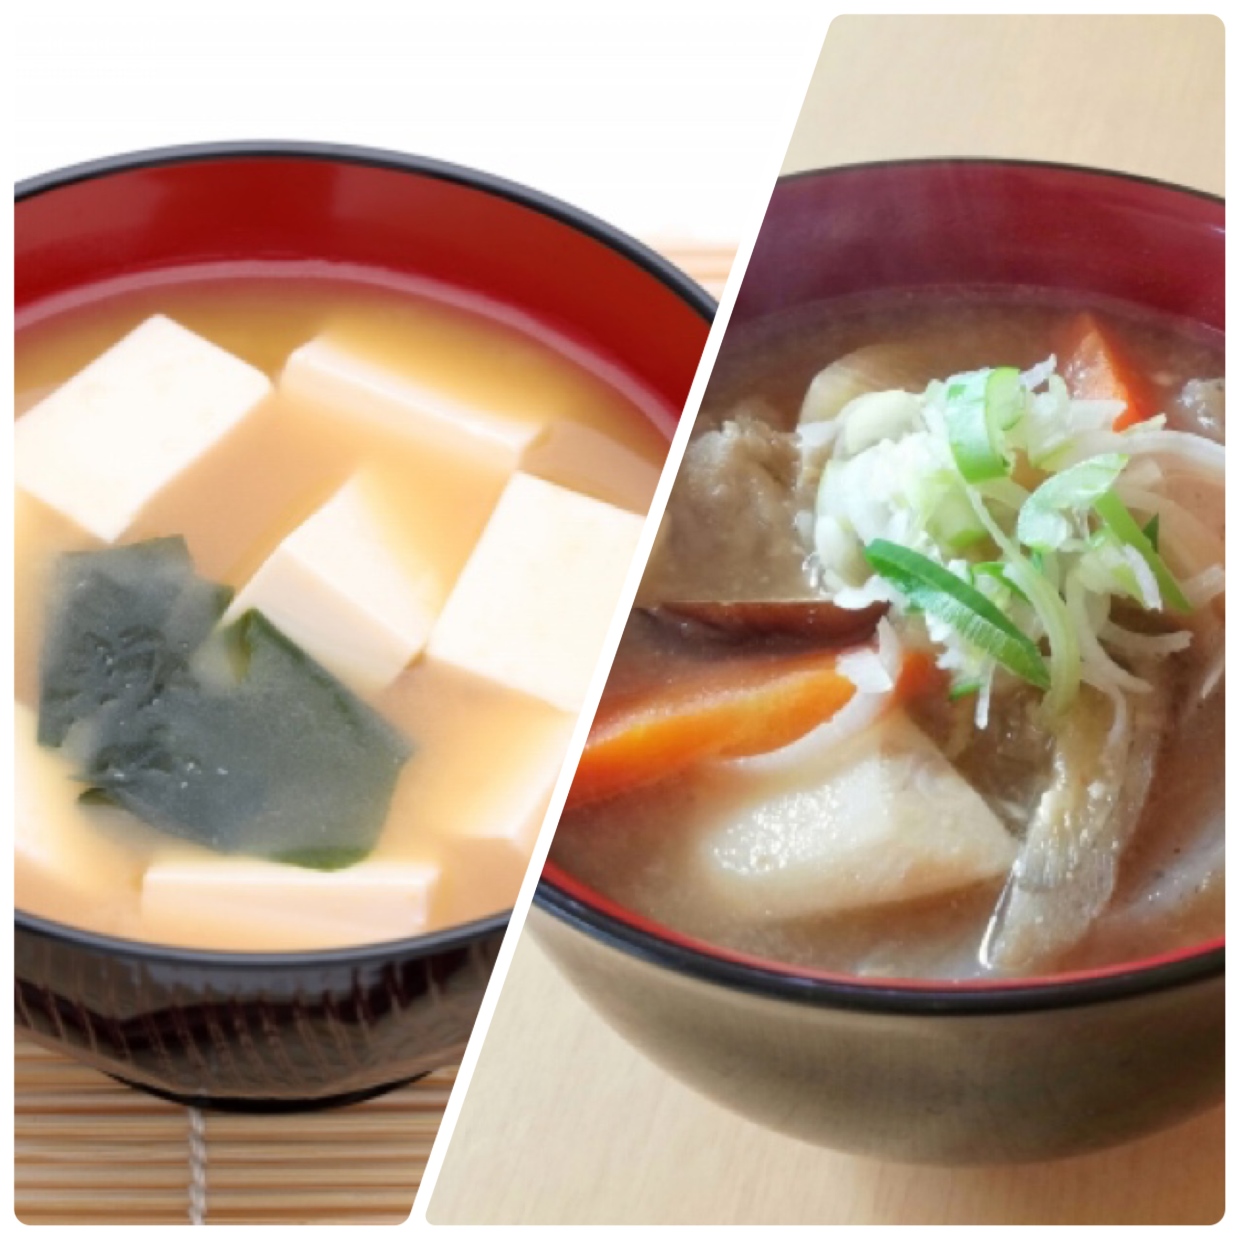  【太らないのはどっち？】「豆腐の味噌汁」VS「豚汁」ダイエット中に選びたい汁物は？ 